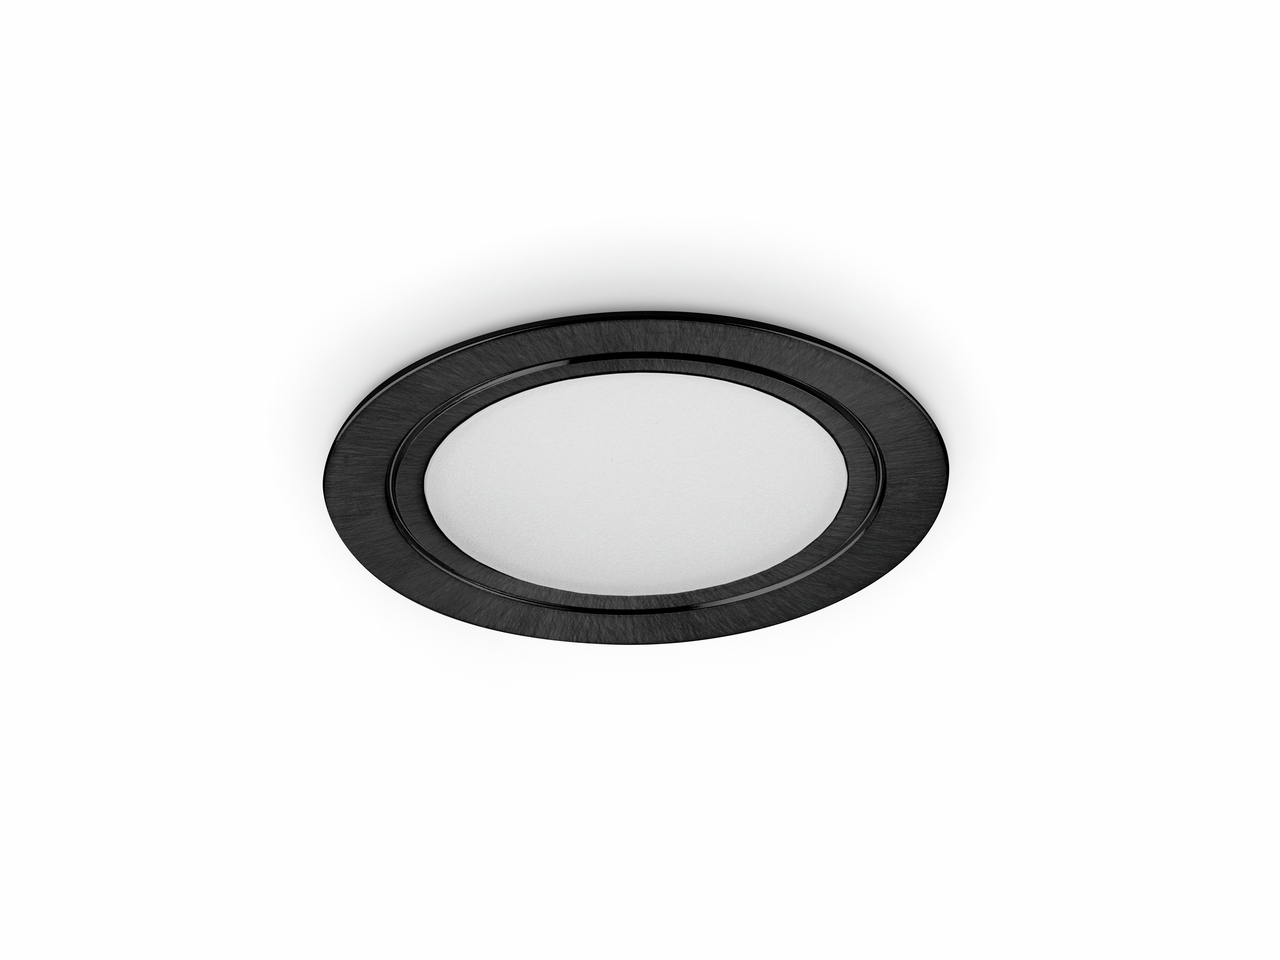 Anelli LED black matt, set 3, 3000 K warm white